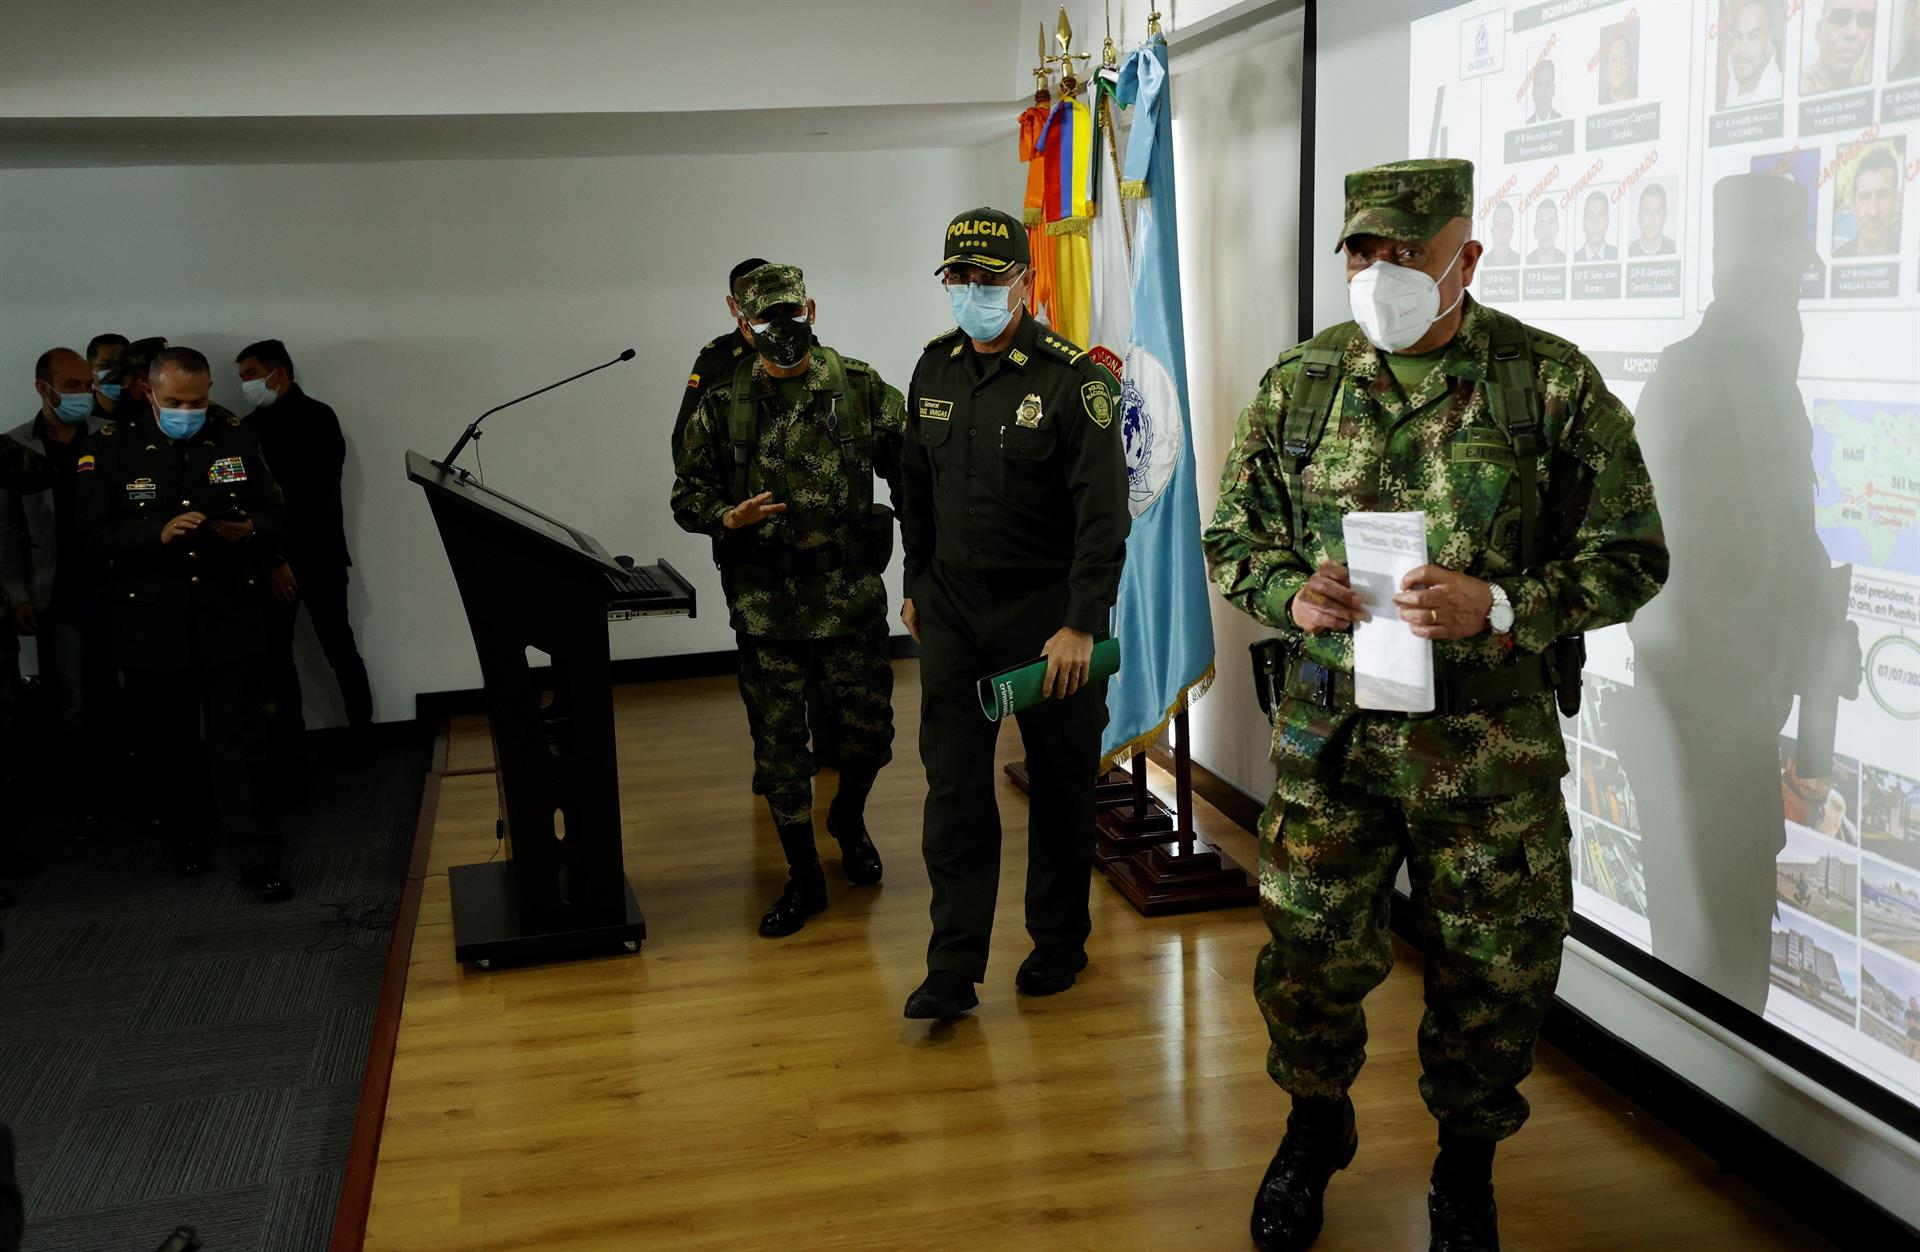 El Tiempo: “Venezuela debe cumplir y capturar a delincuentes”: director de la Policía colombiana